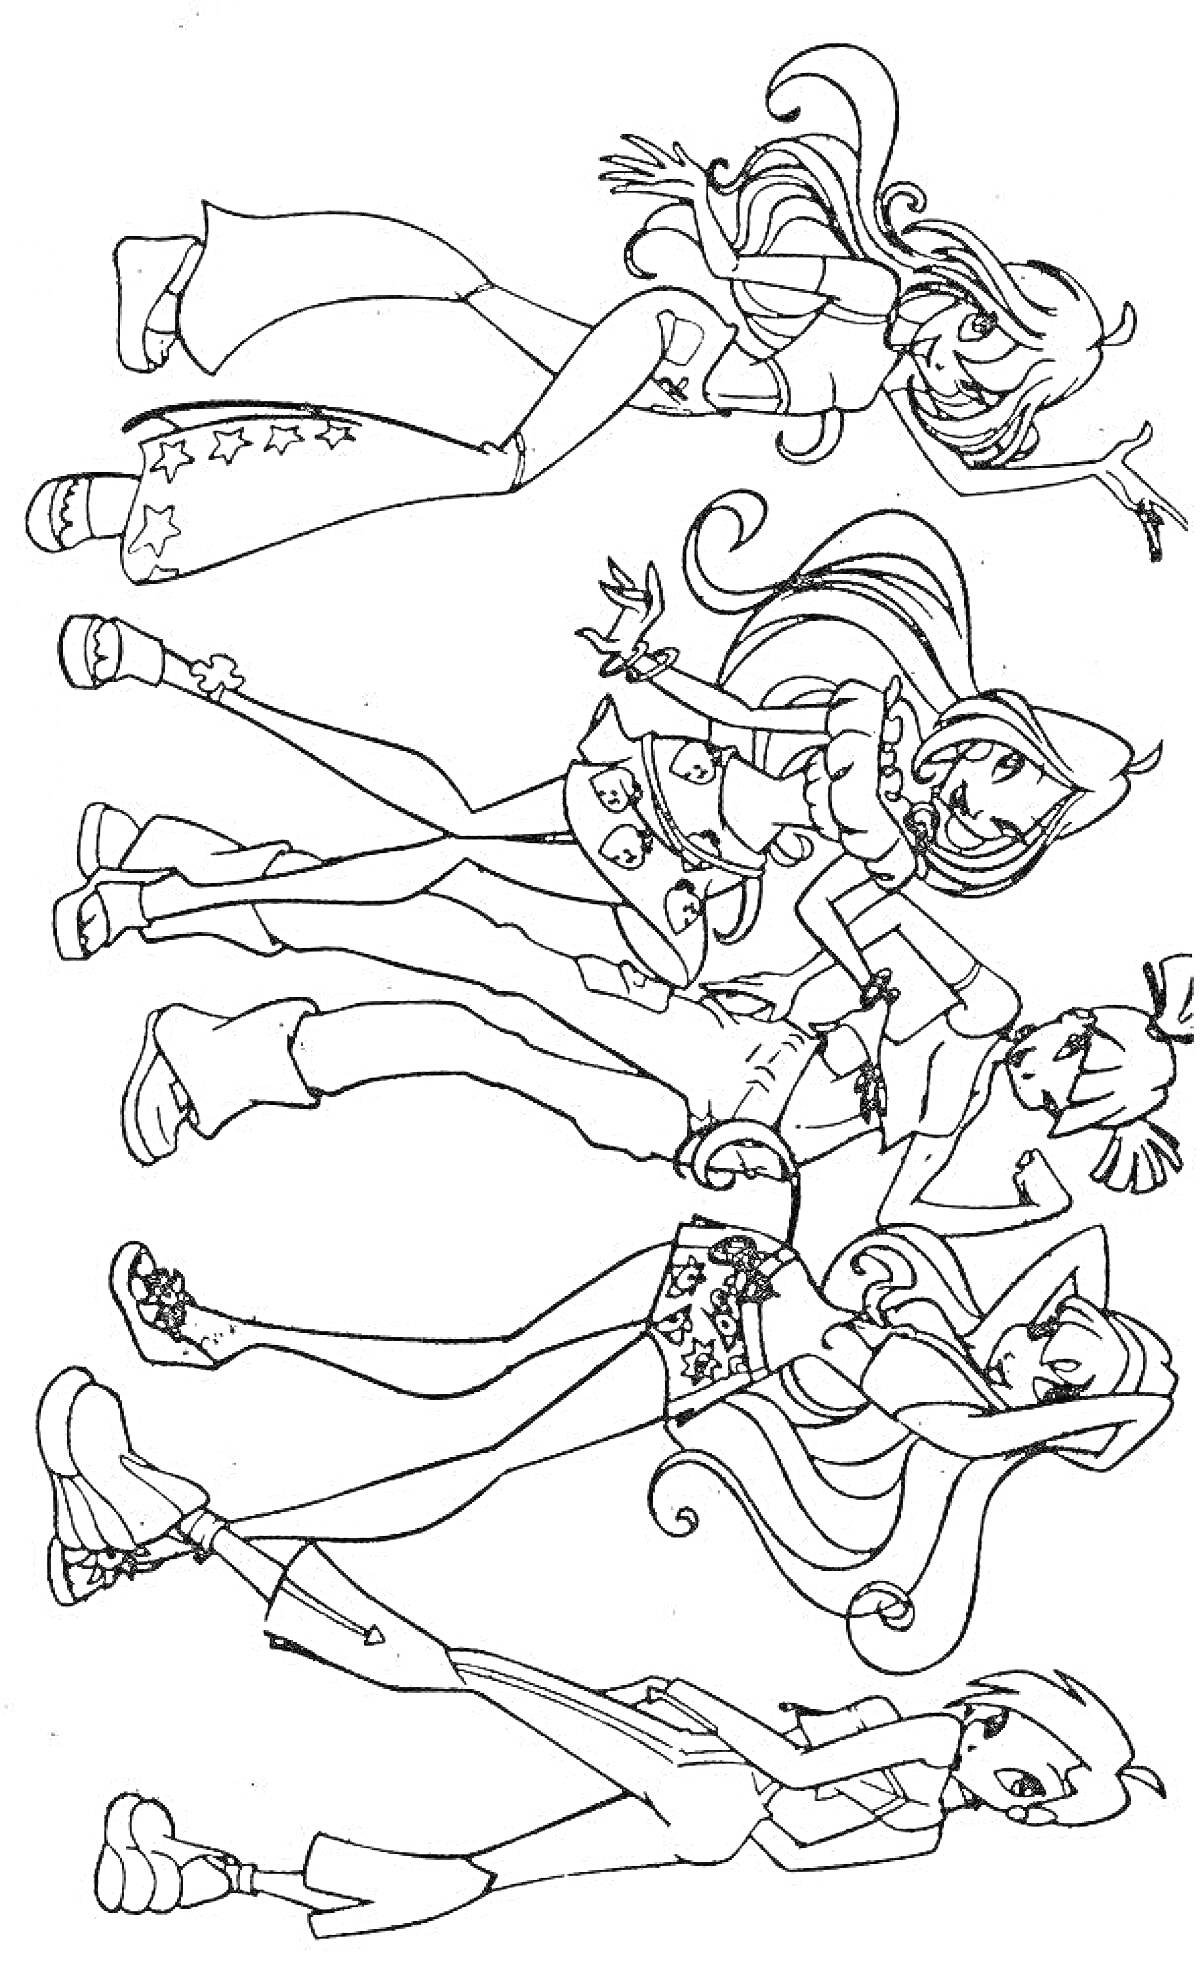 Раскраска Четыре волшебницы в стиле клуба Винкс, стоящие рядом в различных нарядах